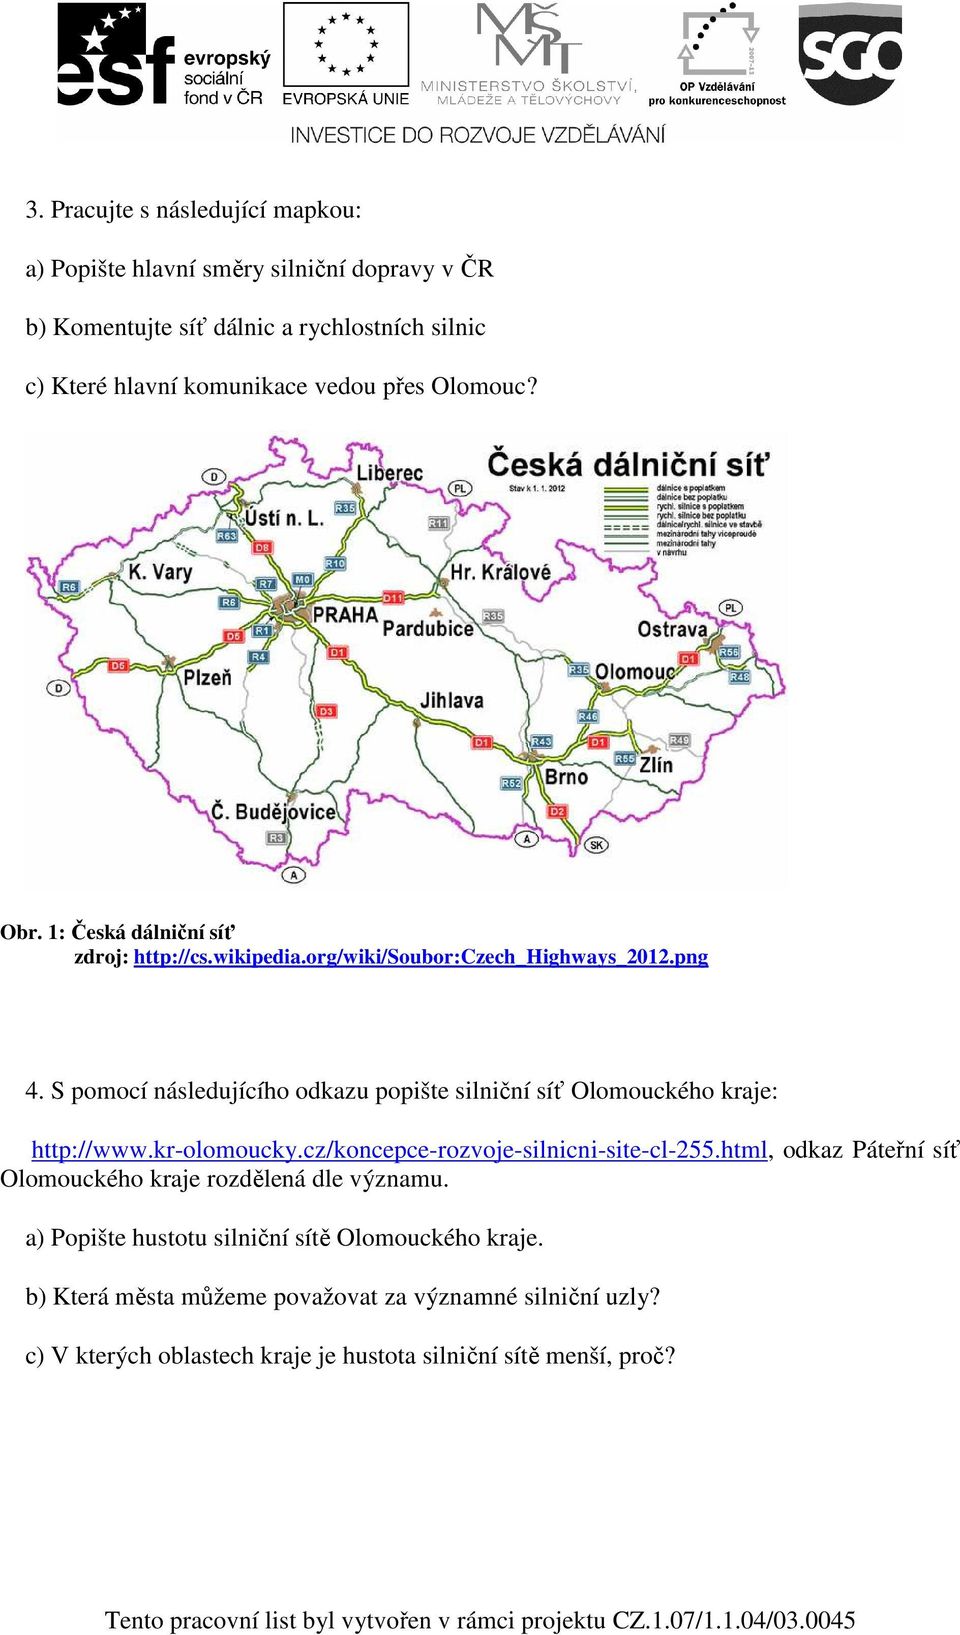 S pomocí následujícího odkazu popište silniční síť Olomouckého kraje: http://www.kr-olomoucky.cz/koncepce-rozvoje-silnicni-site-cl-255.